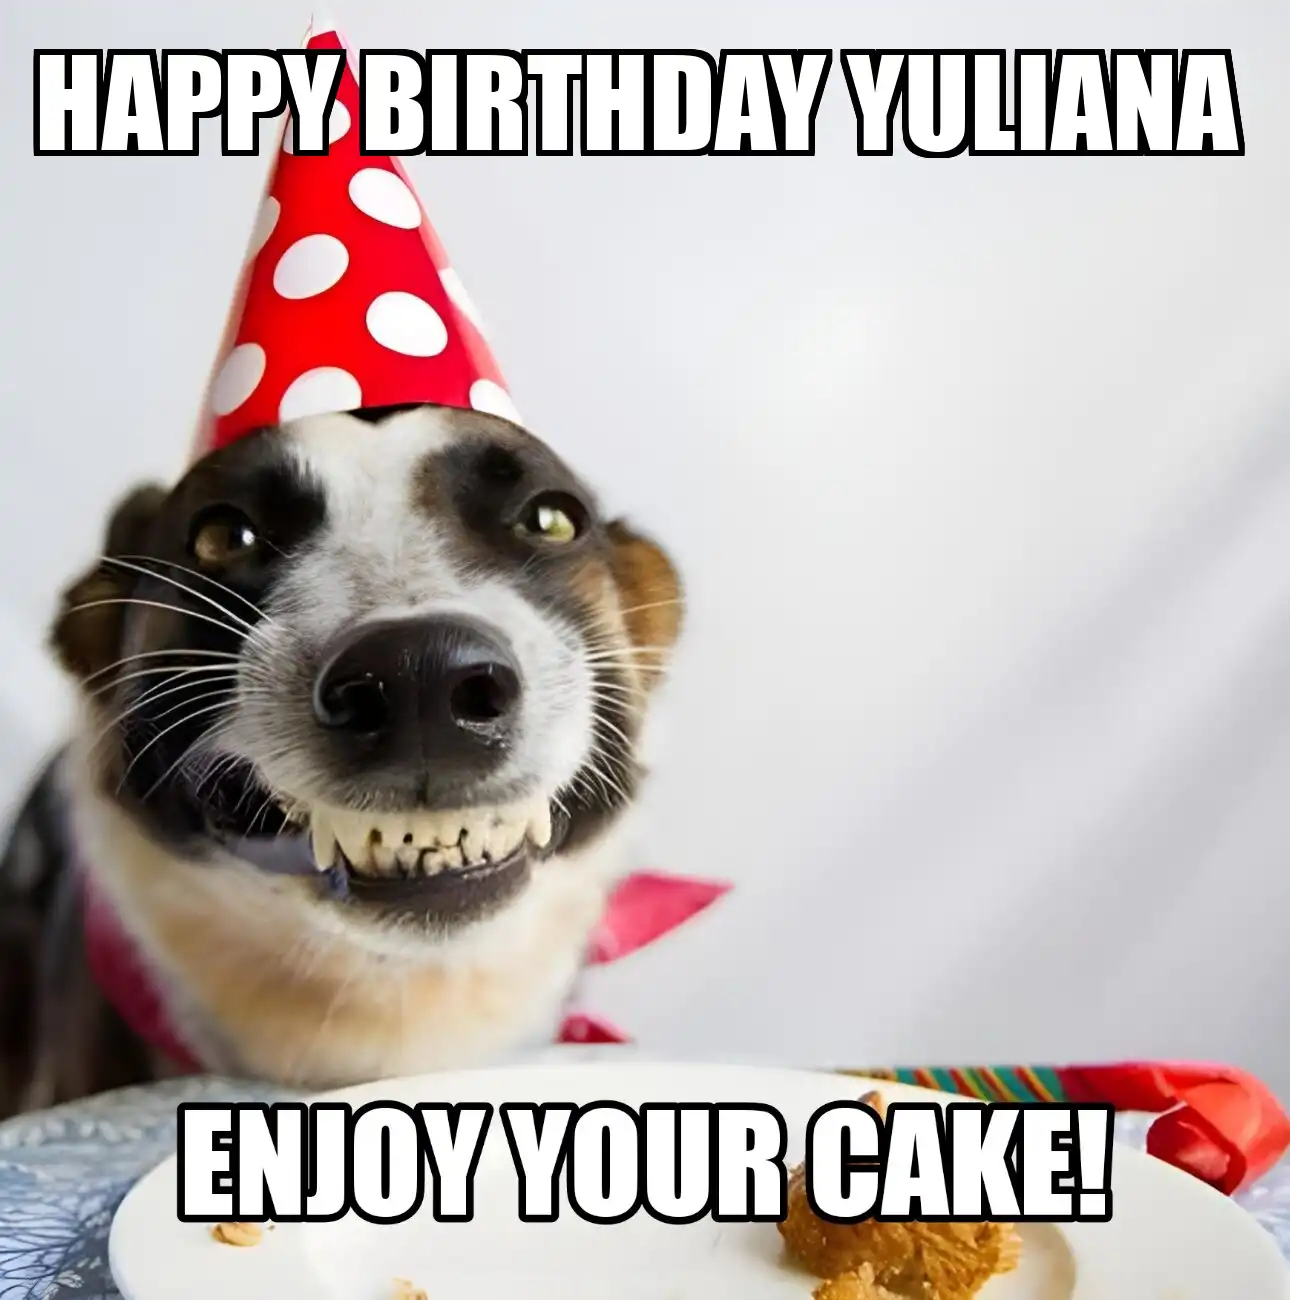 Happy Birthday Yuliana Enjoy Your Cake Dog Meme